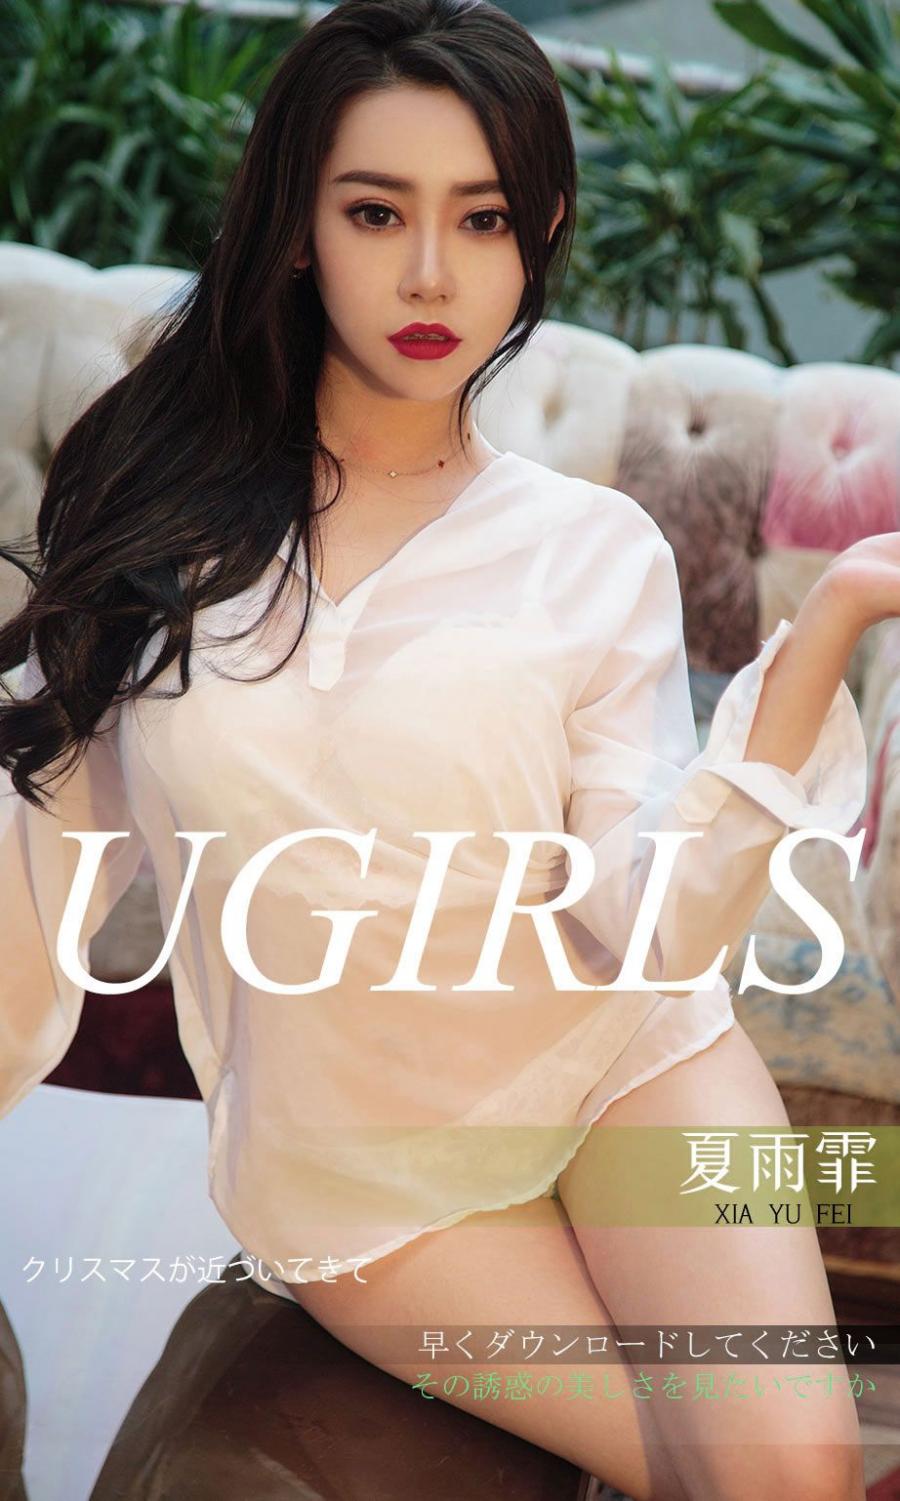 Ugirls App Vol. 1311 Xia Yu Fei